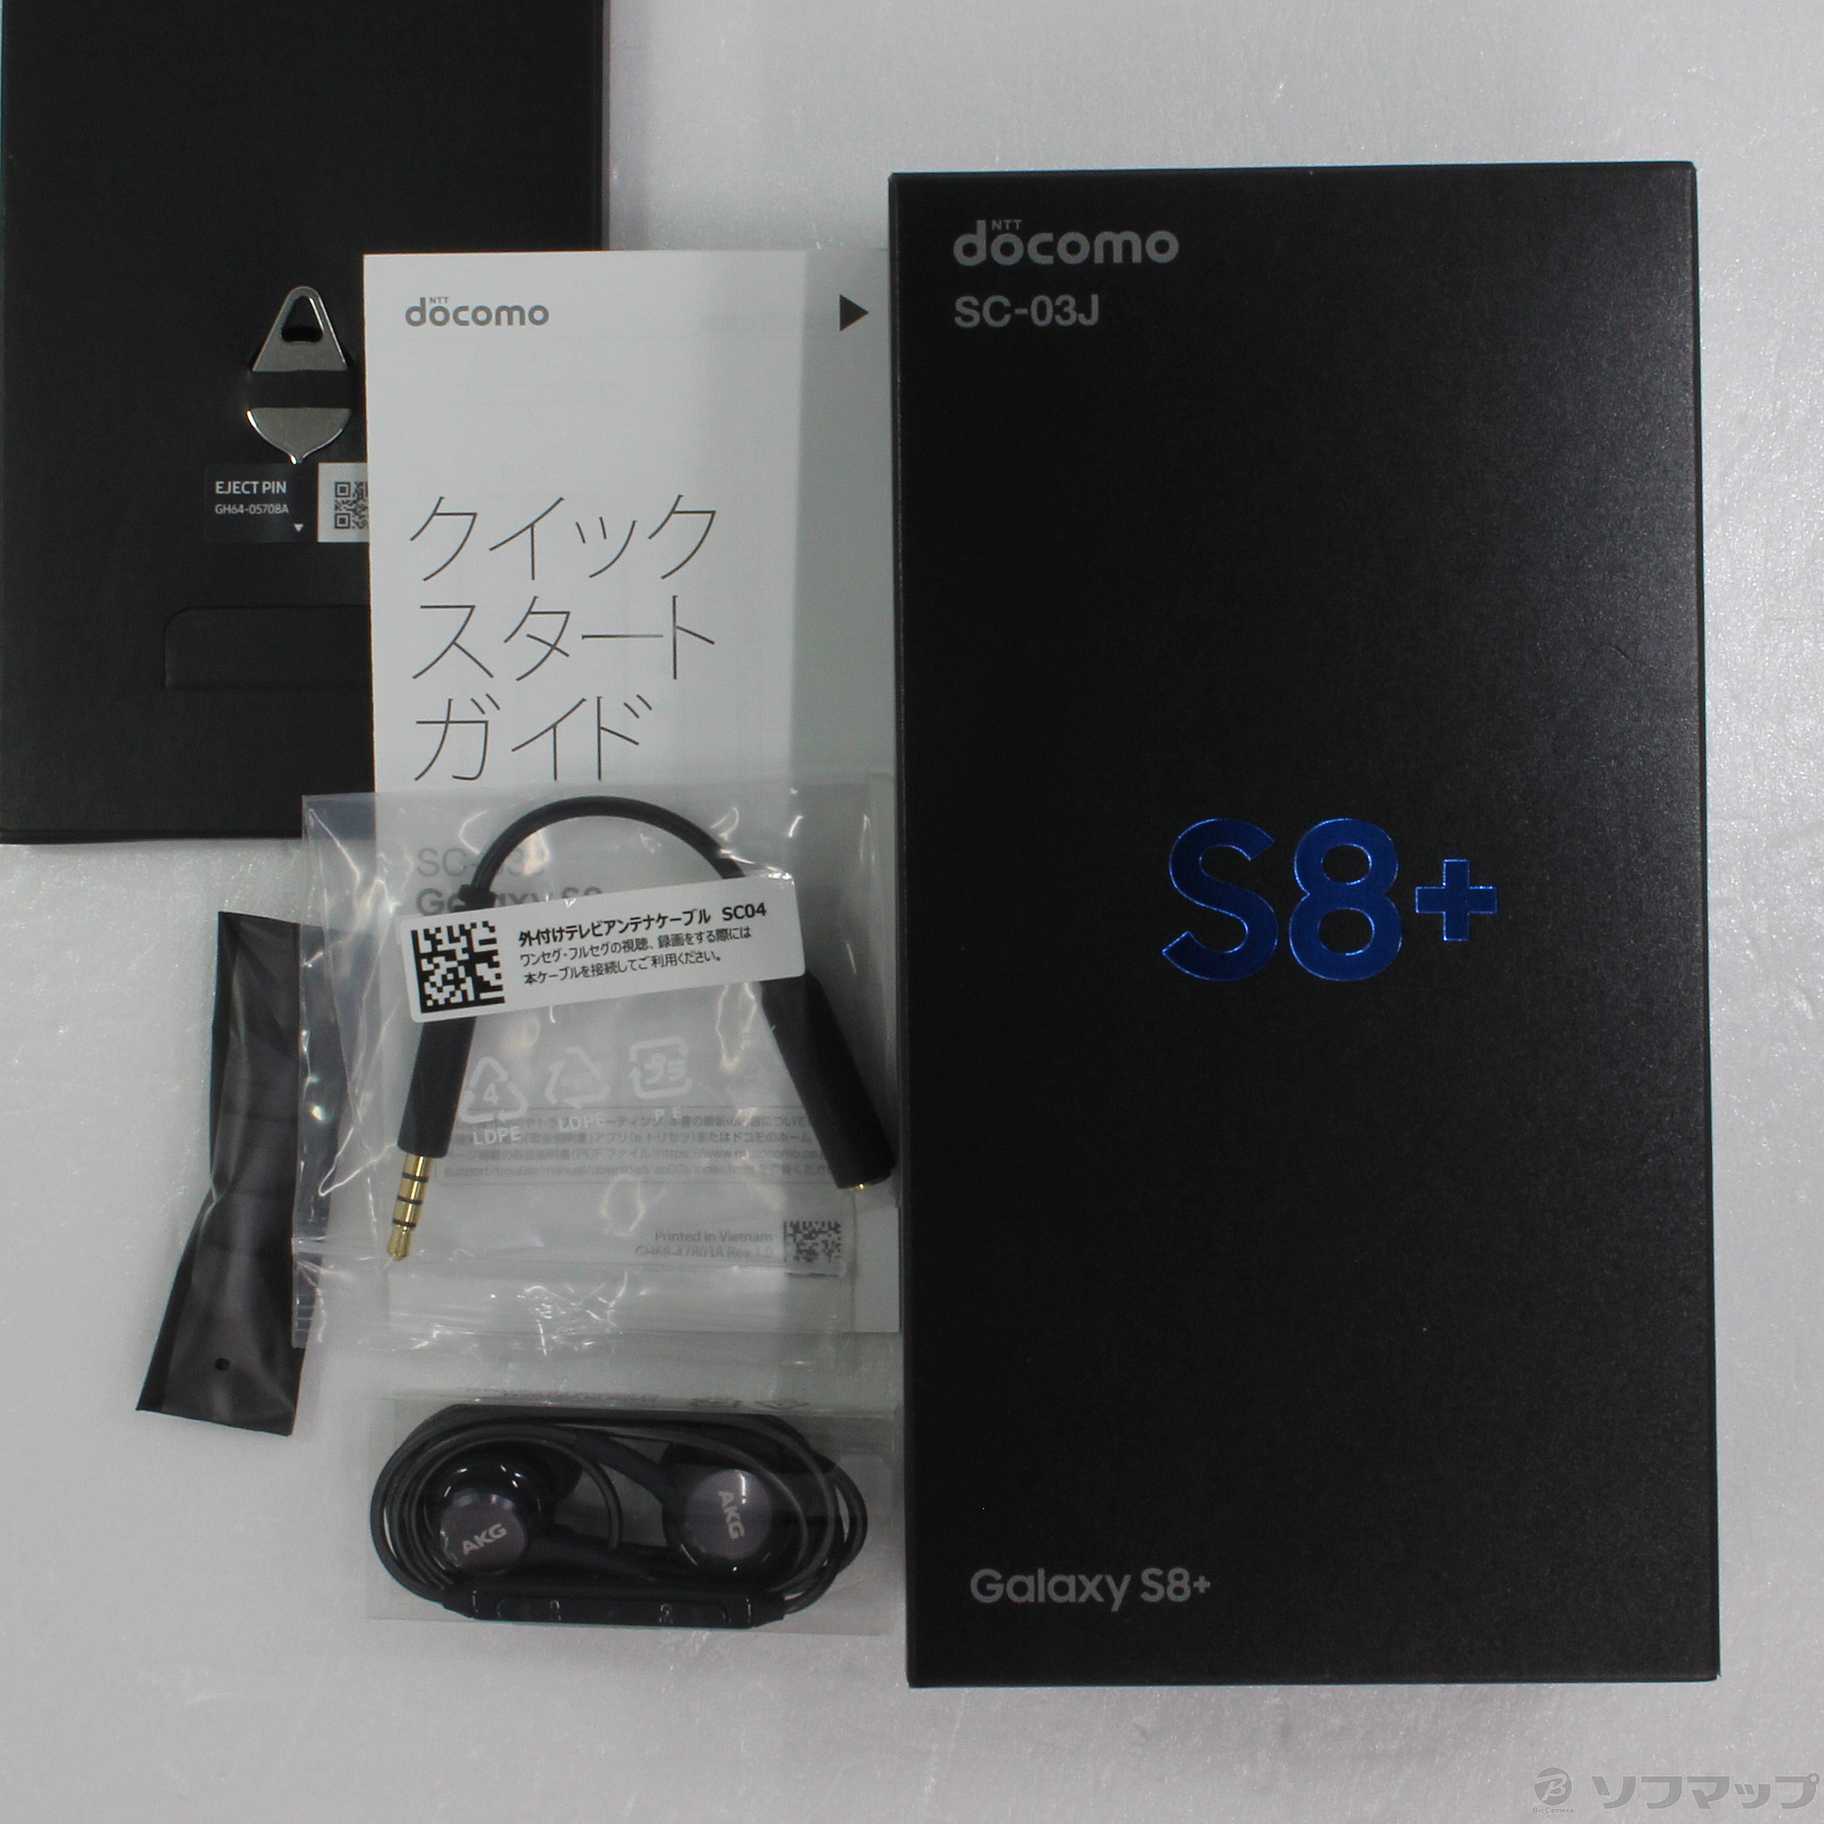 【美品】GALAXY S8+ SC-03J docomo ドコモ silver